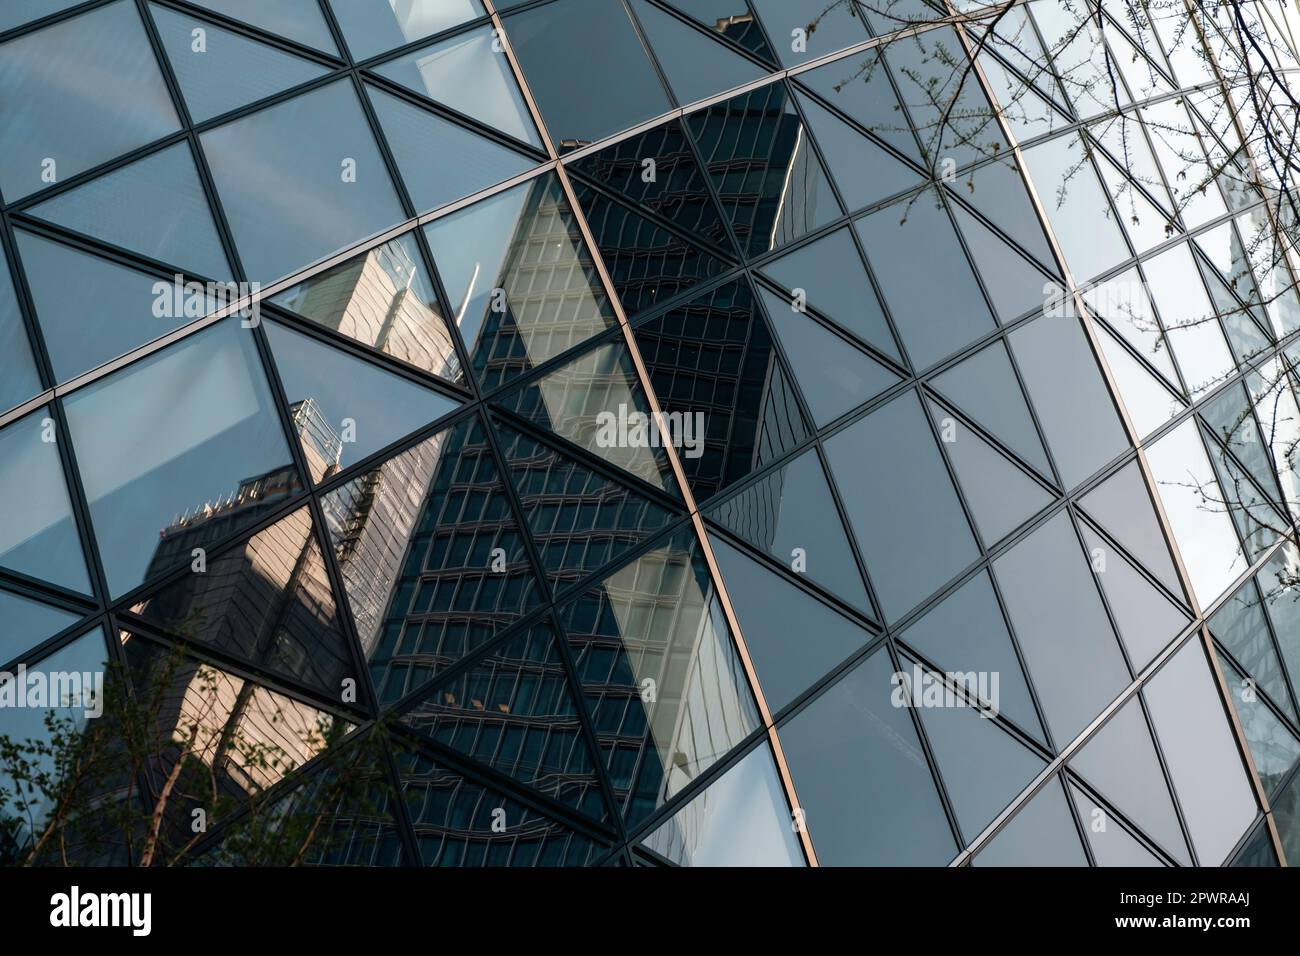 Nahaufnahme des Gherkin-Gebäudes in der Stadt london. Die Glasscheiben erscheinen gekrümmt, sind es aber nicht. Gebäude werden reflektiert. Stockfoto